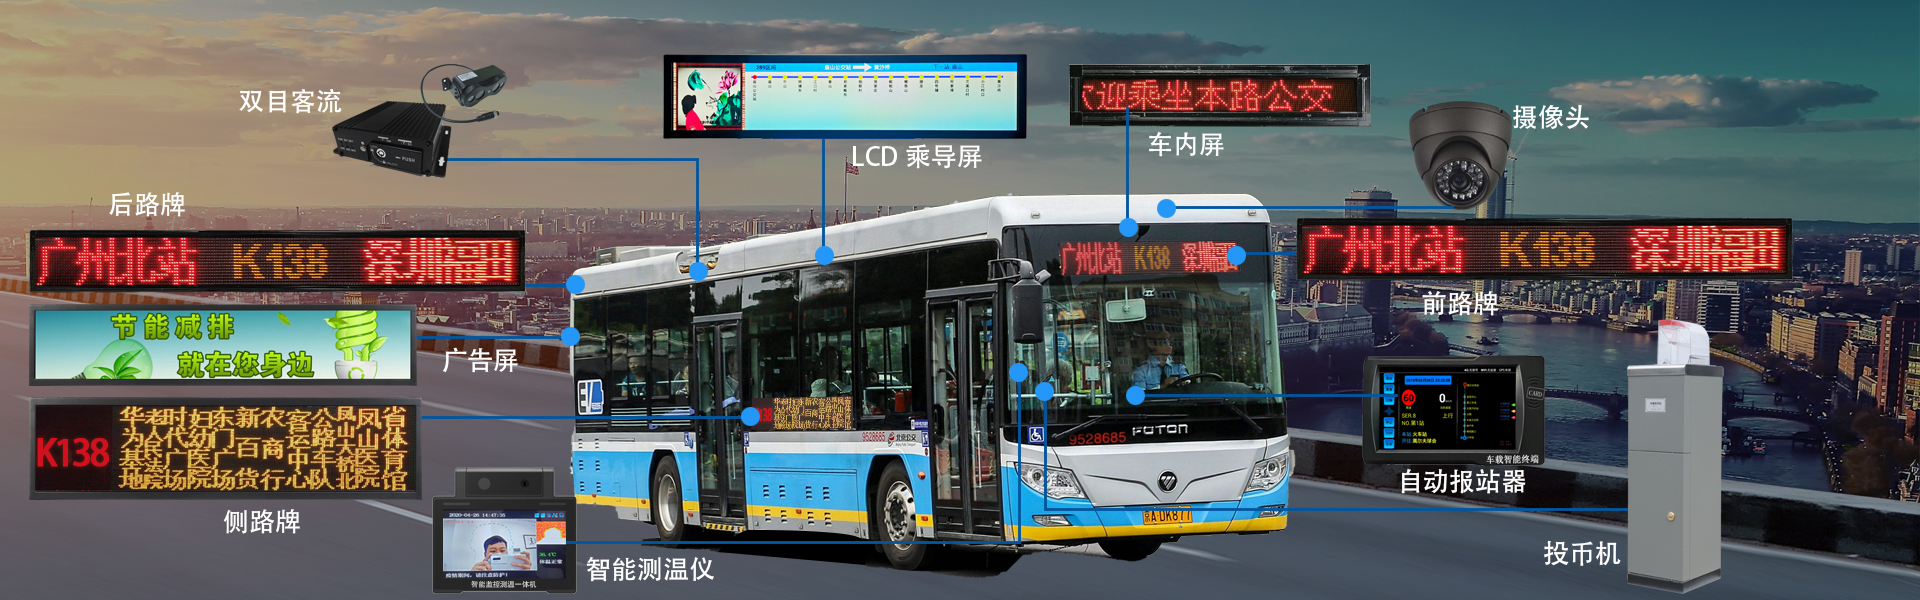 公交车LED广告屏G7款